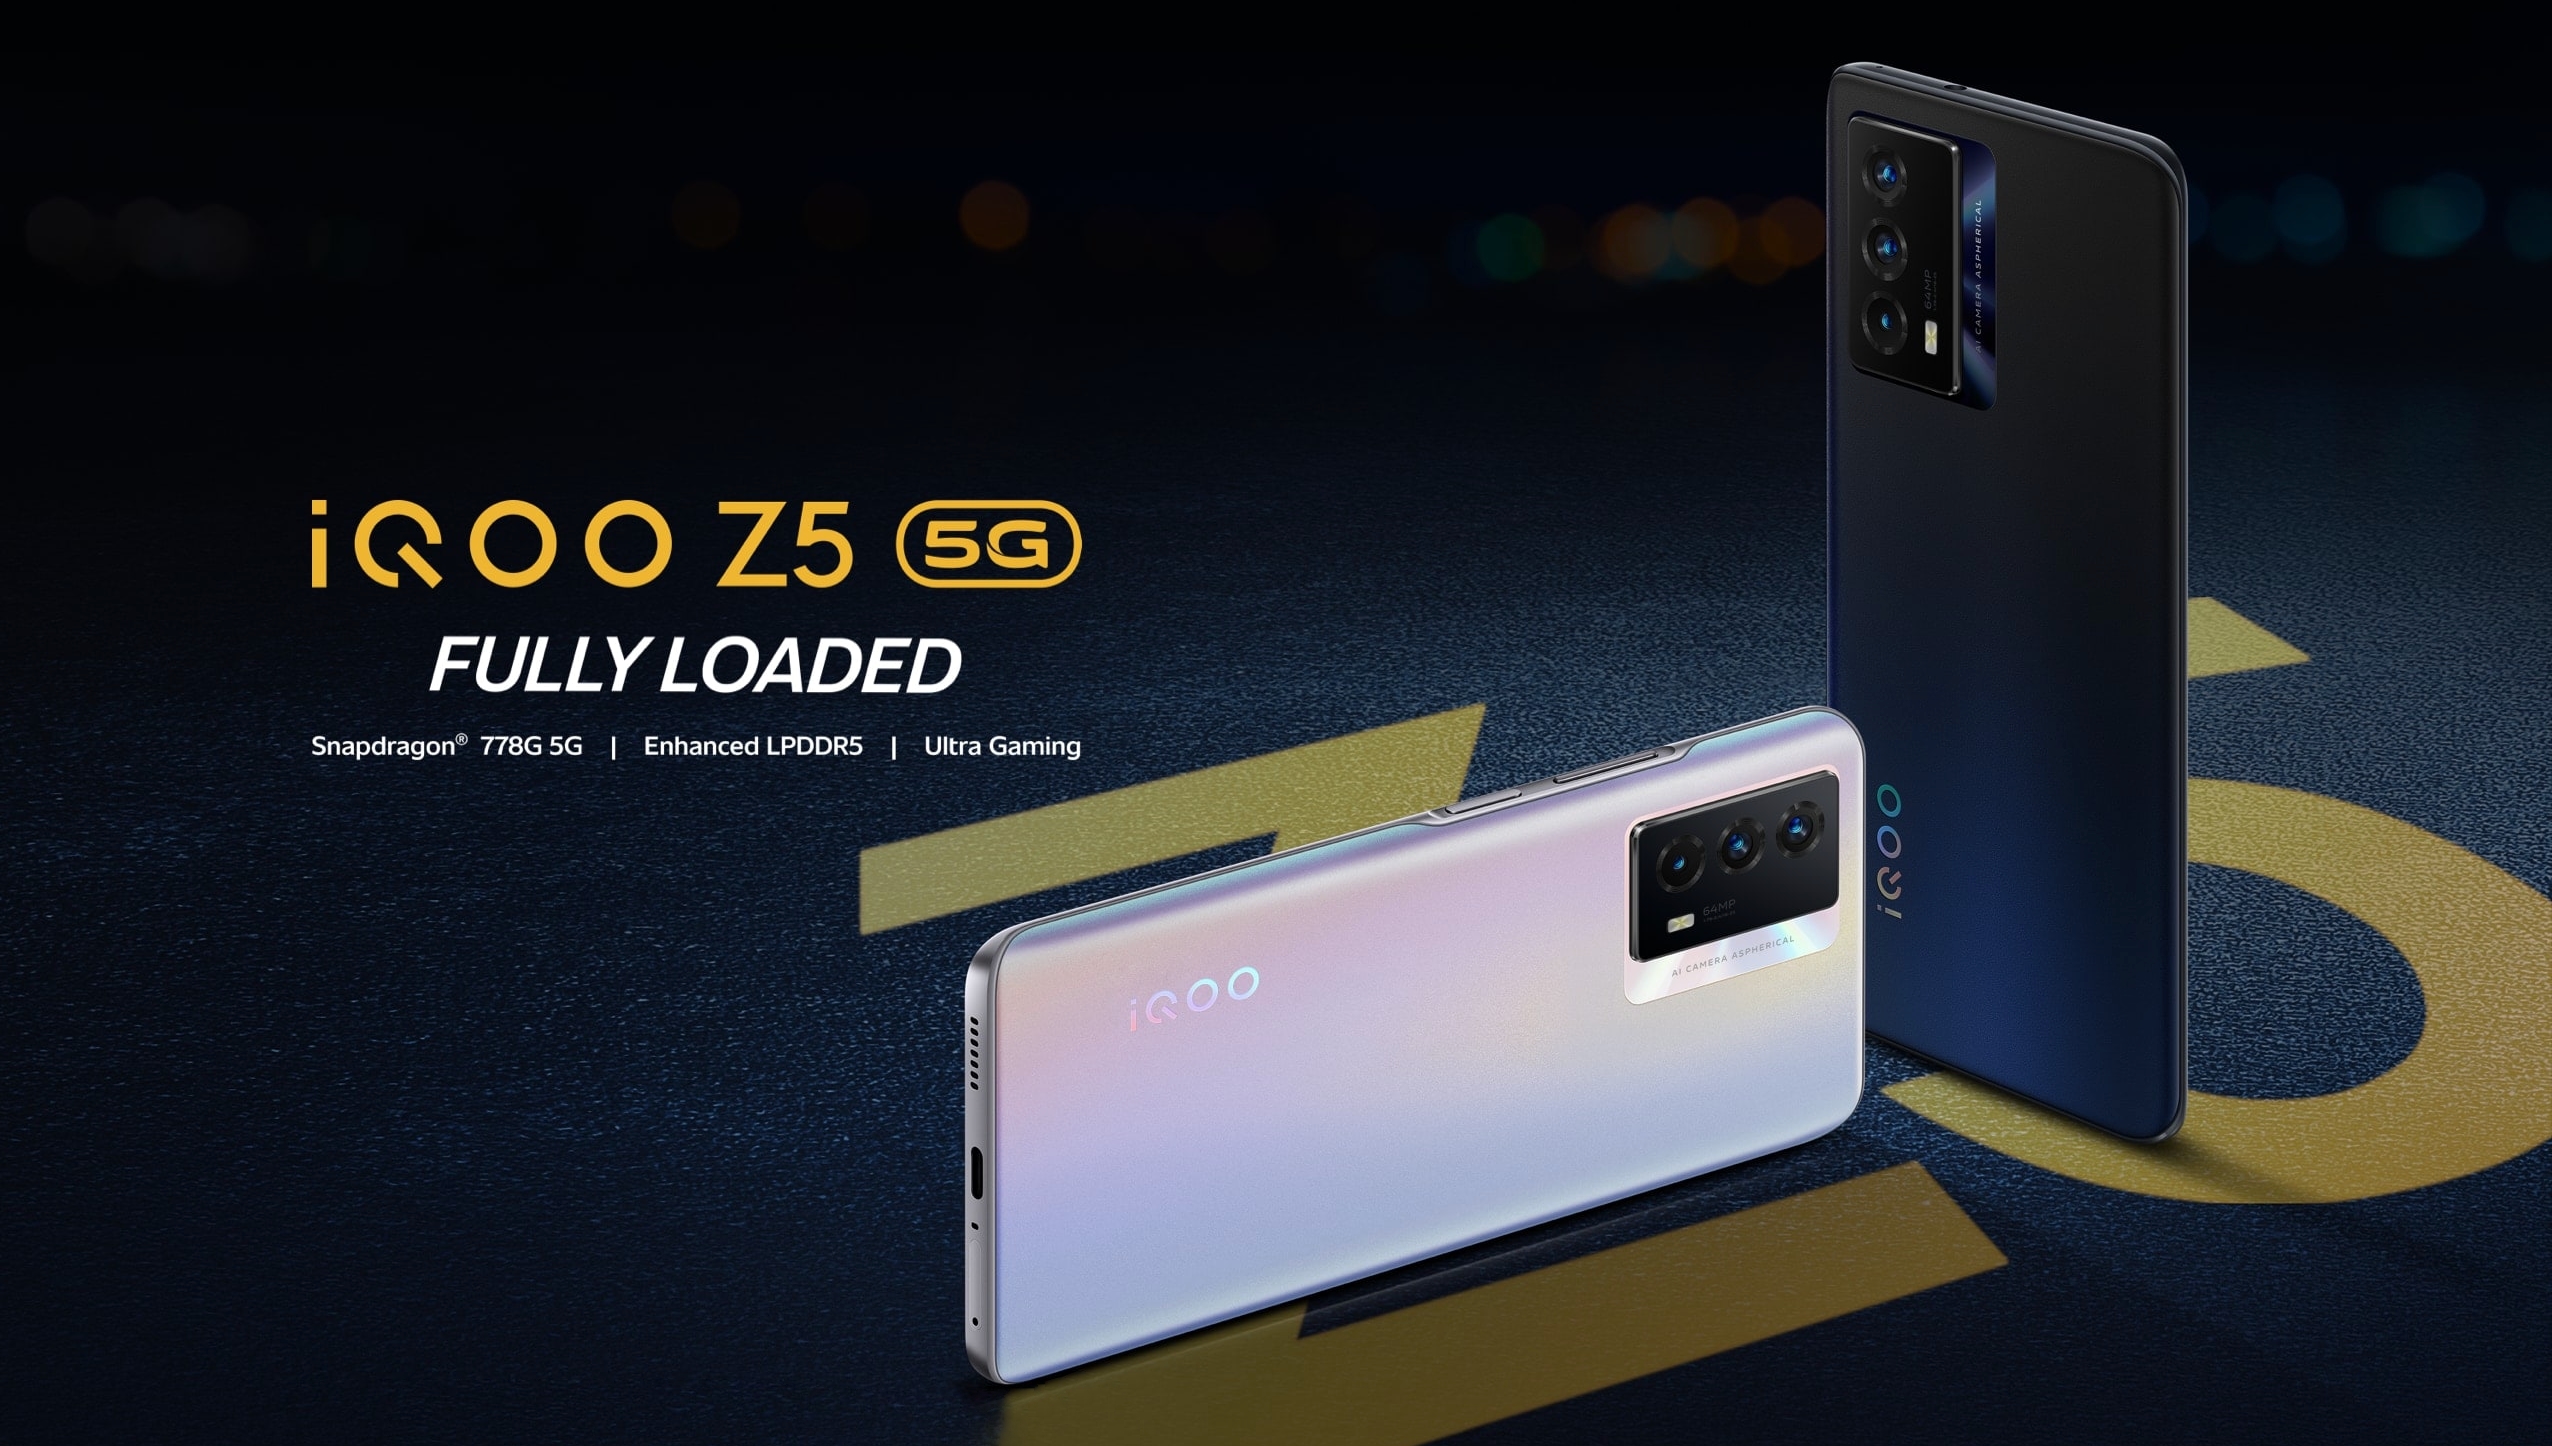 iQOO Z5 5G mit Snapdragon 778G Chip, 120Hz Bildschirm und 5000mAh Akku außerhalb Chinas veröffentlicht